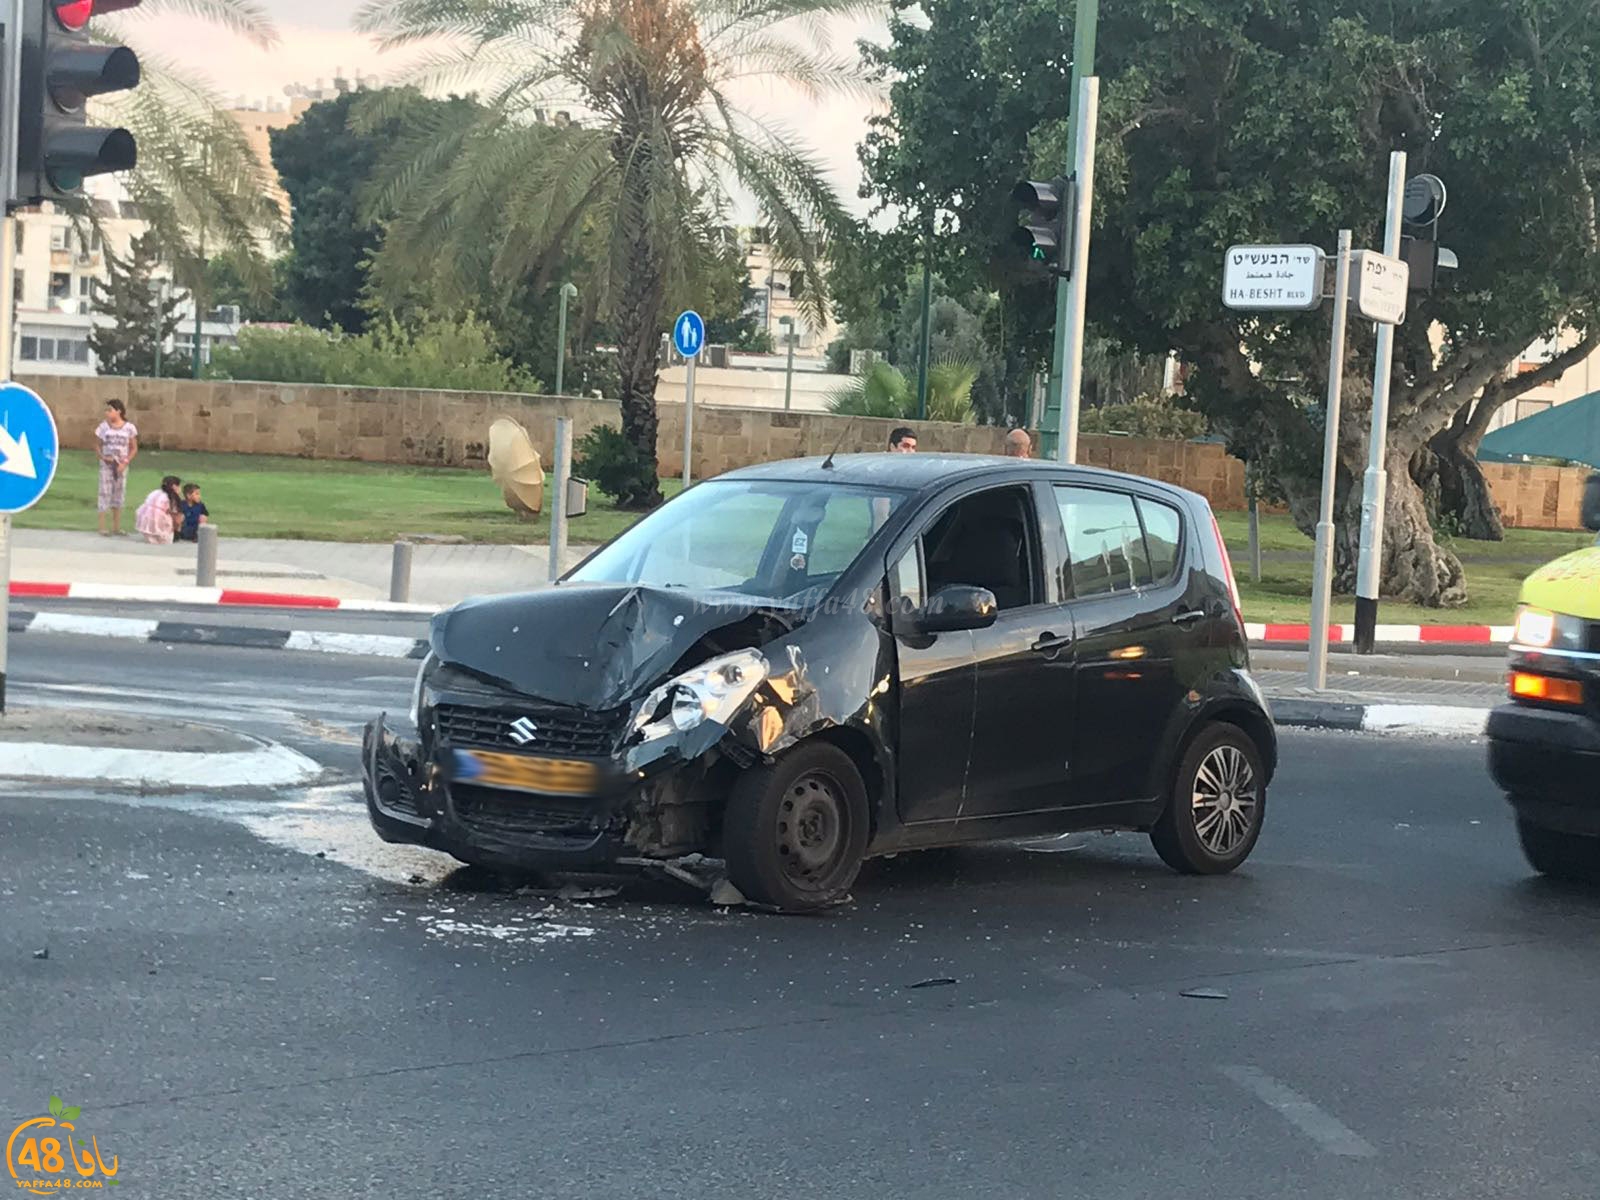  يافا: حادث طرق بين مركبتين دون وقوع اصابات 